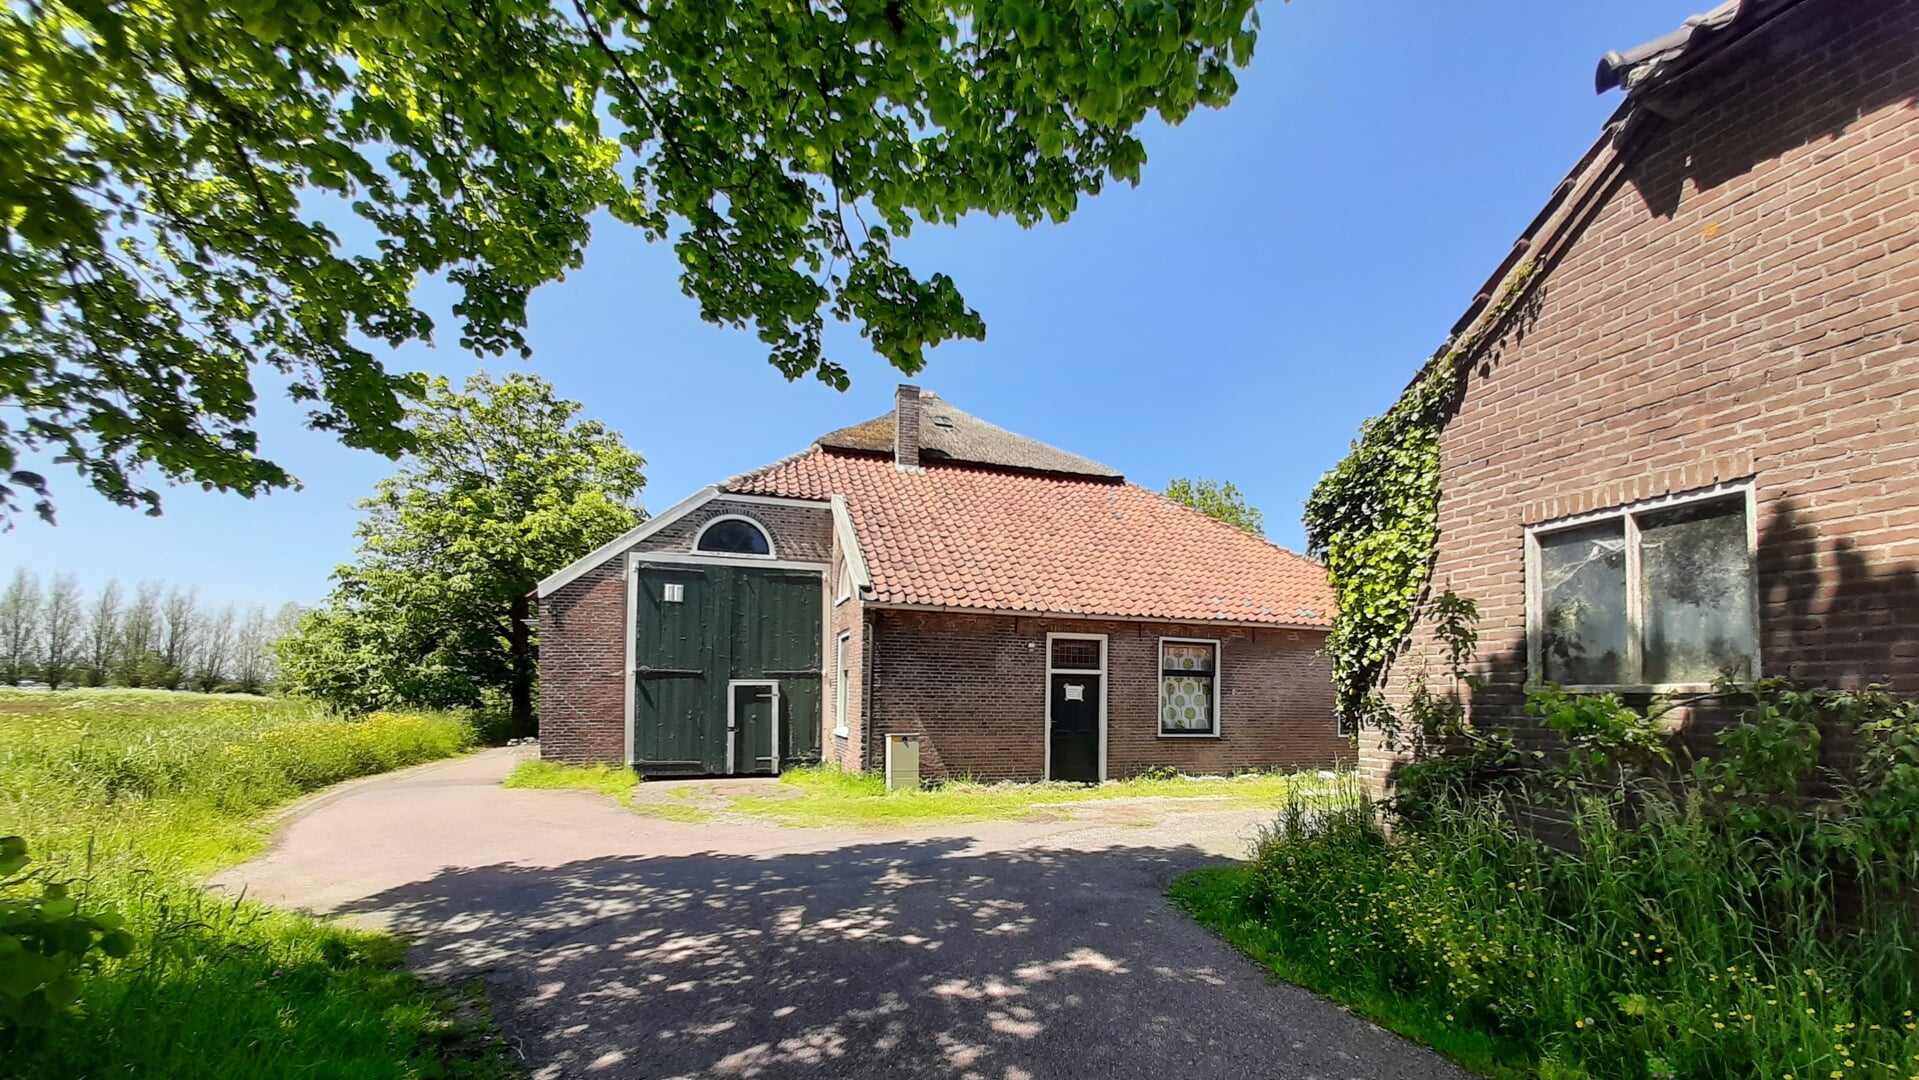 De oude stolpboerderij uit 1850 ligt midden in het weidse polderlandschap van Spaarnwoude Park.